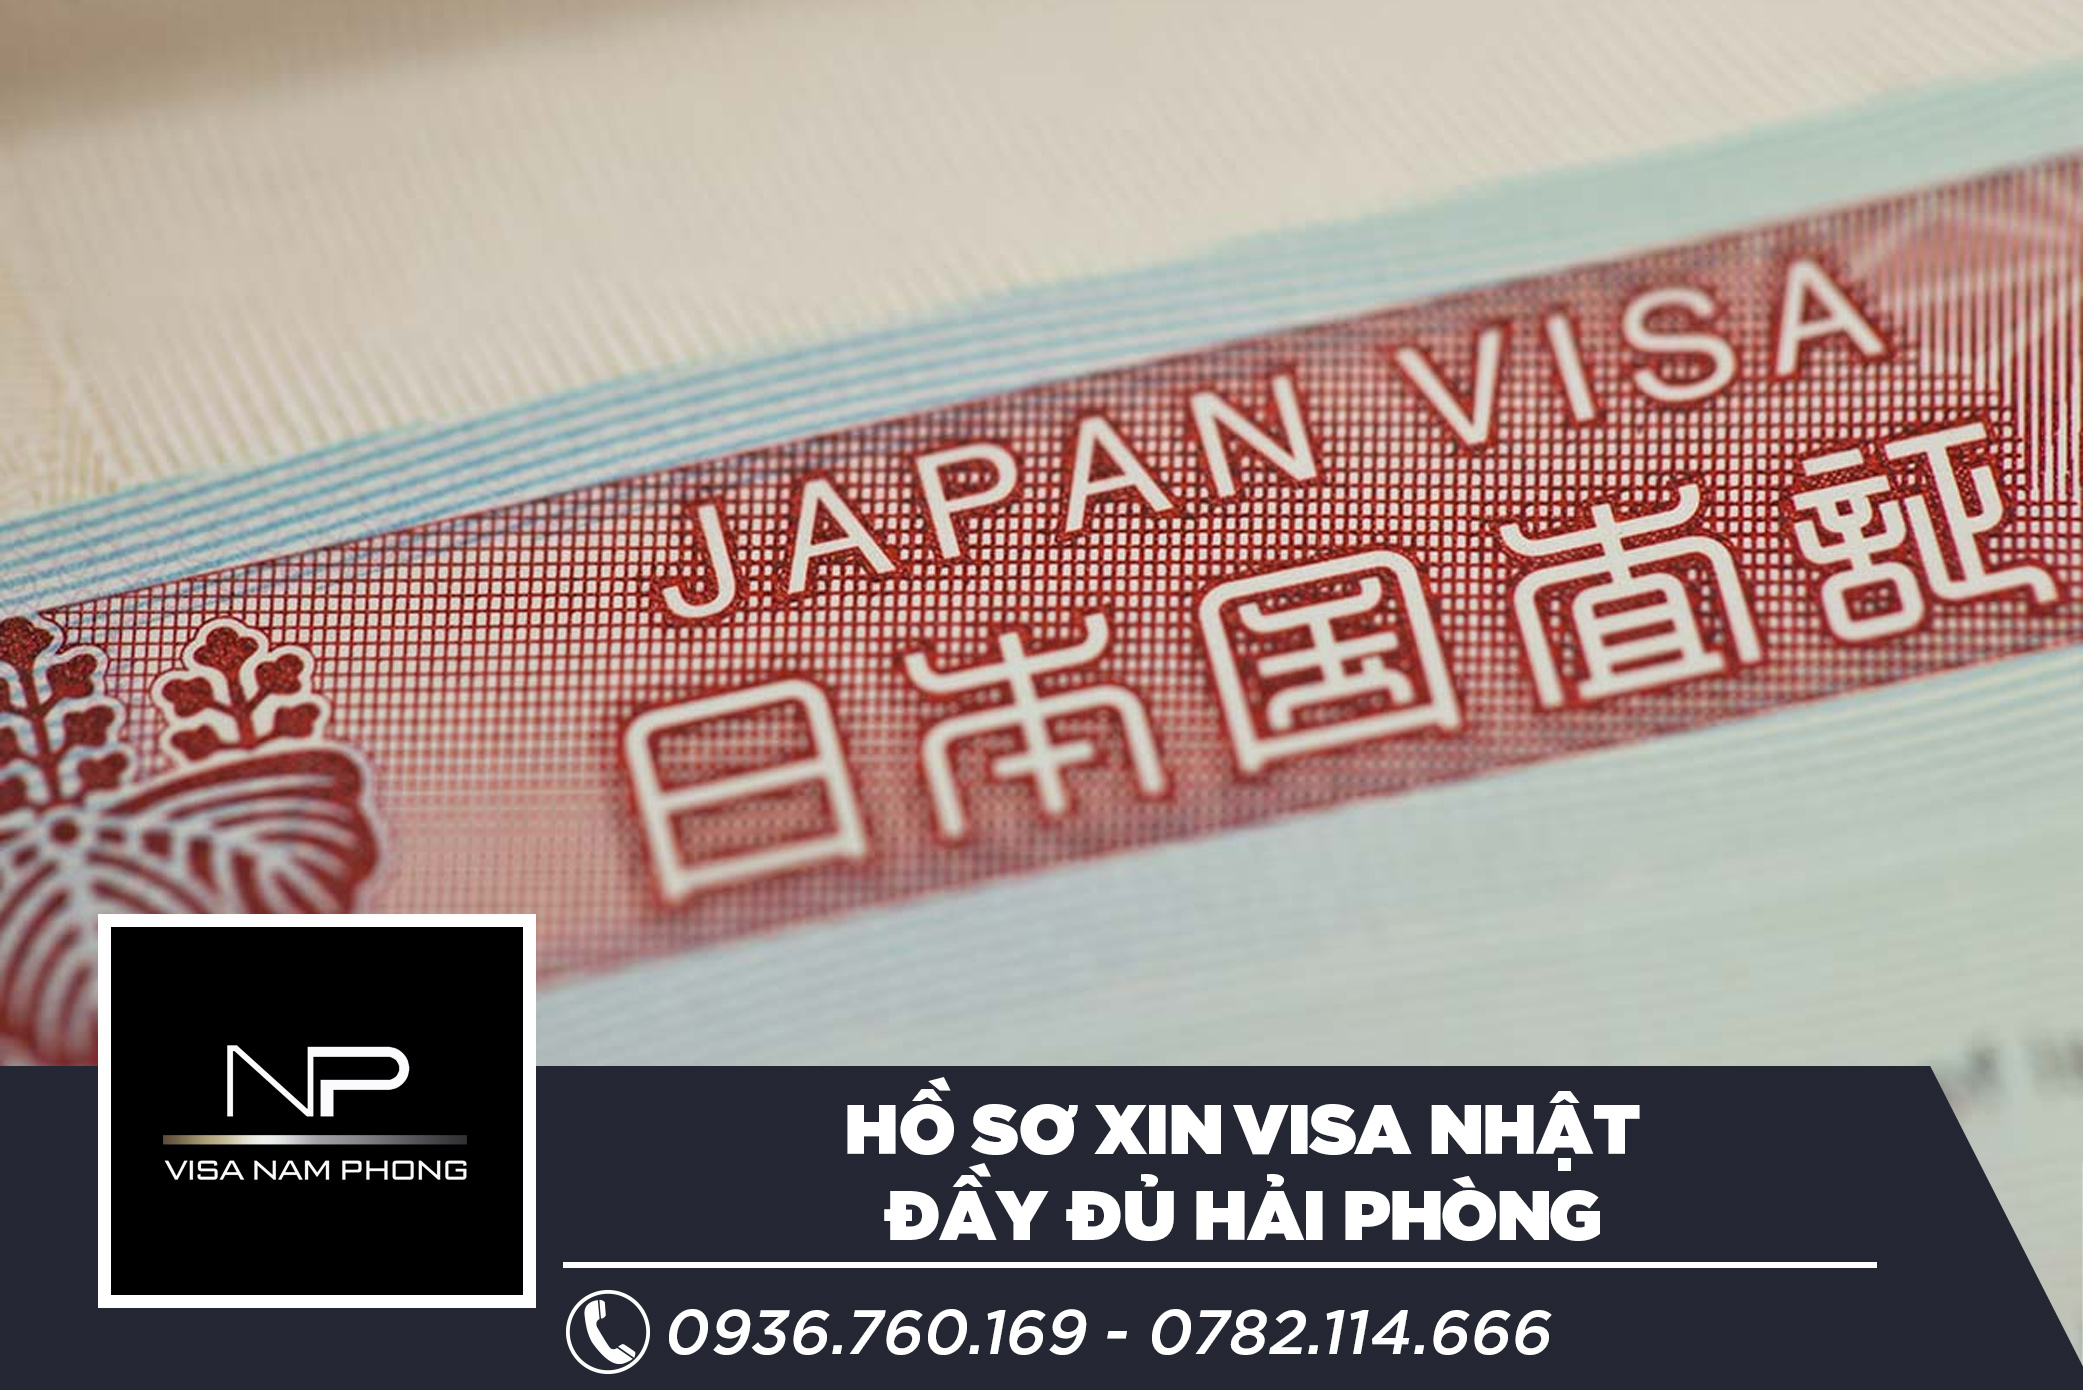 Hồ sơ xin visa Nhật đầy đủ Hải Phòng